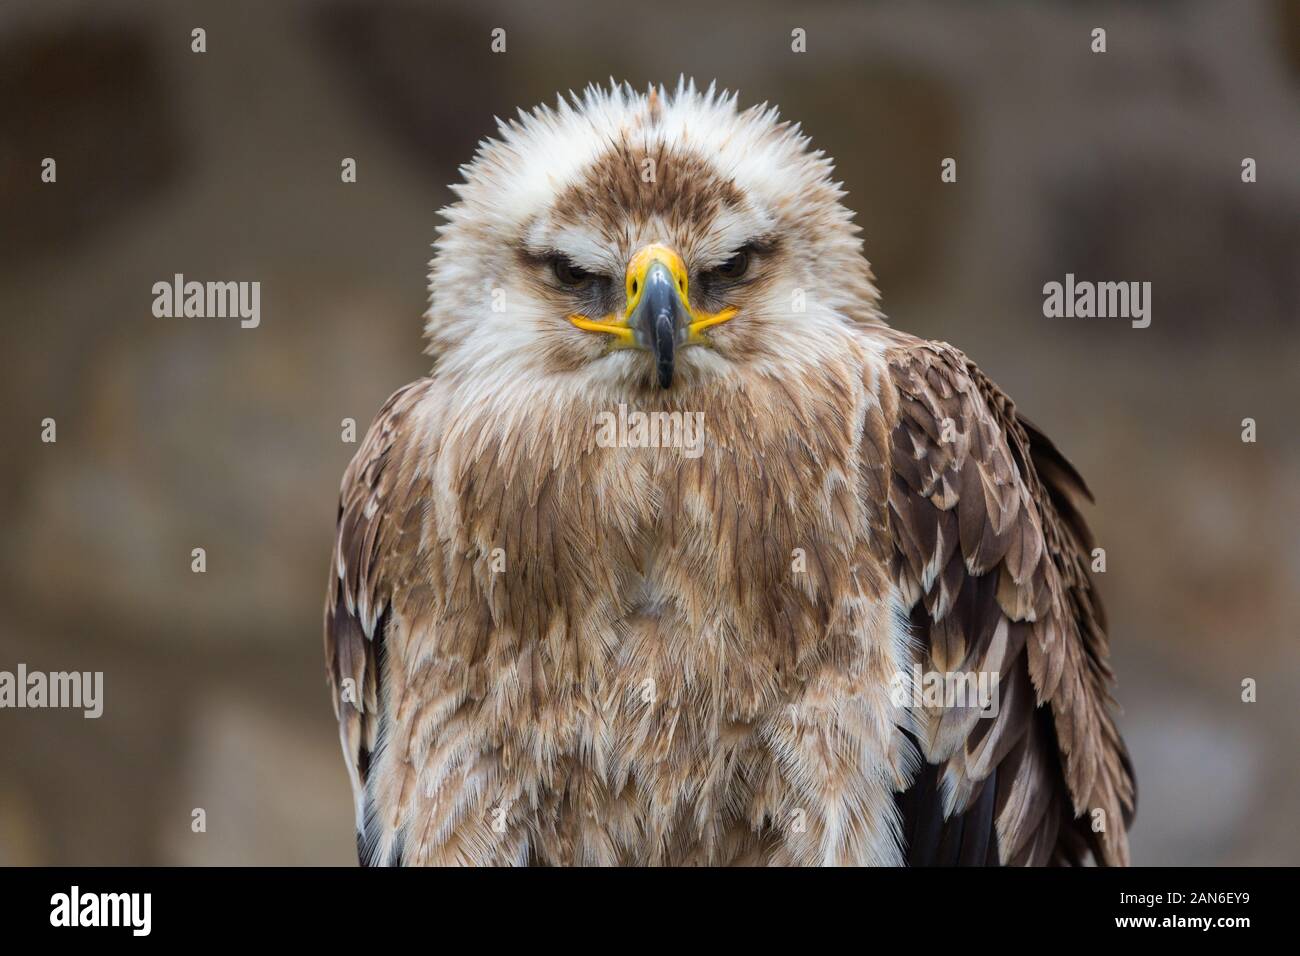 Ritratto (vista frontale) di un'Aquila Imperiale Orientale (in tedesco: Kaiseradler). Uccello di preda, guardando in macchina fotografica. Testa con becco, occhi, piume. Foto Stock